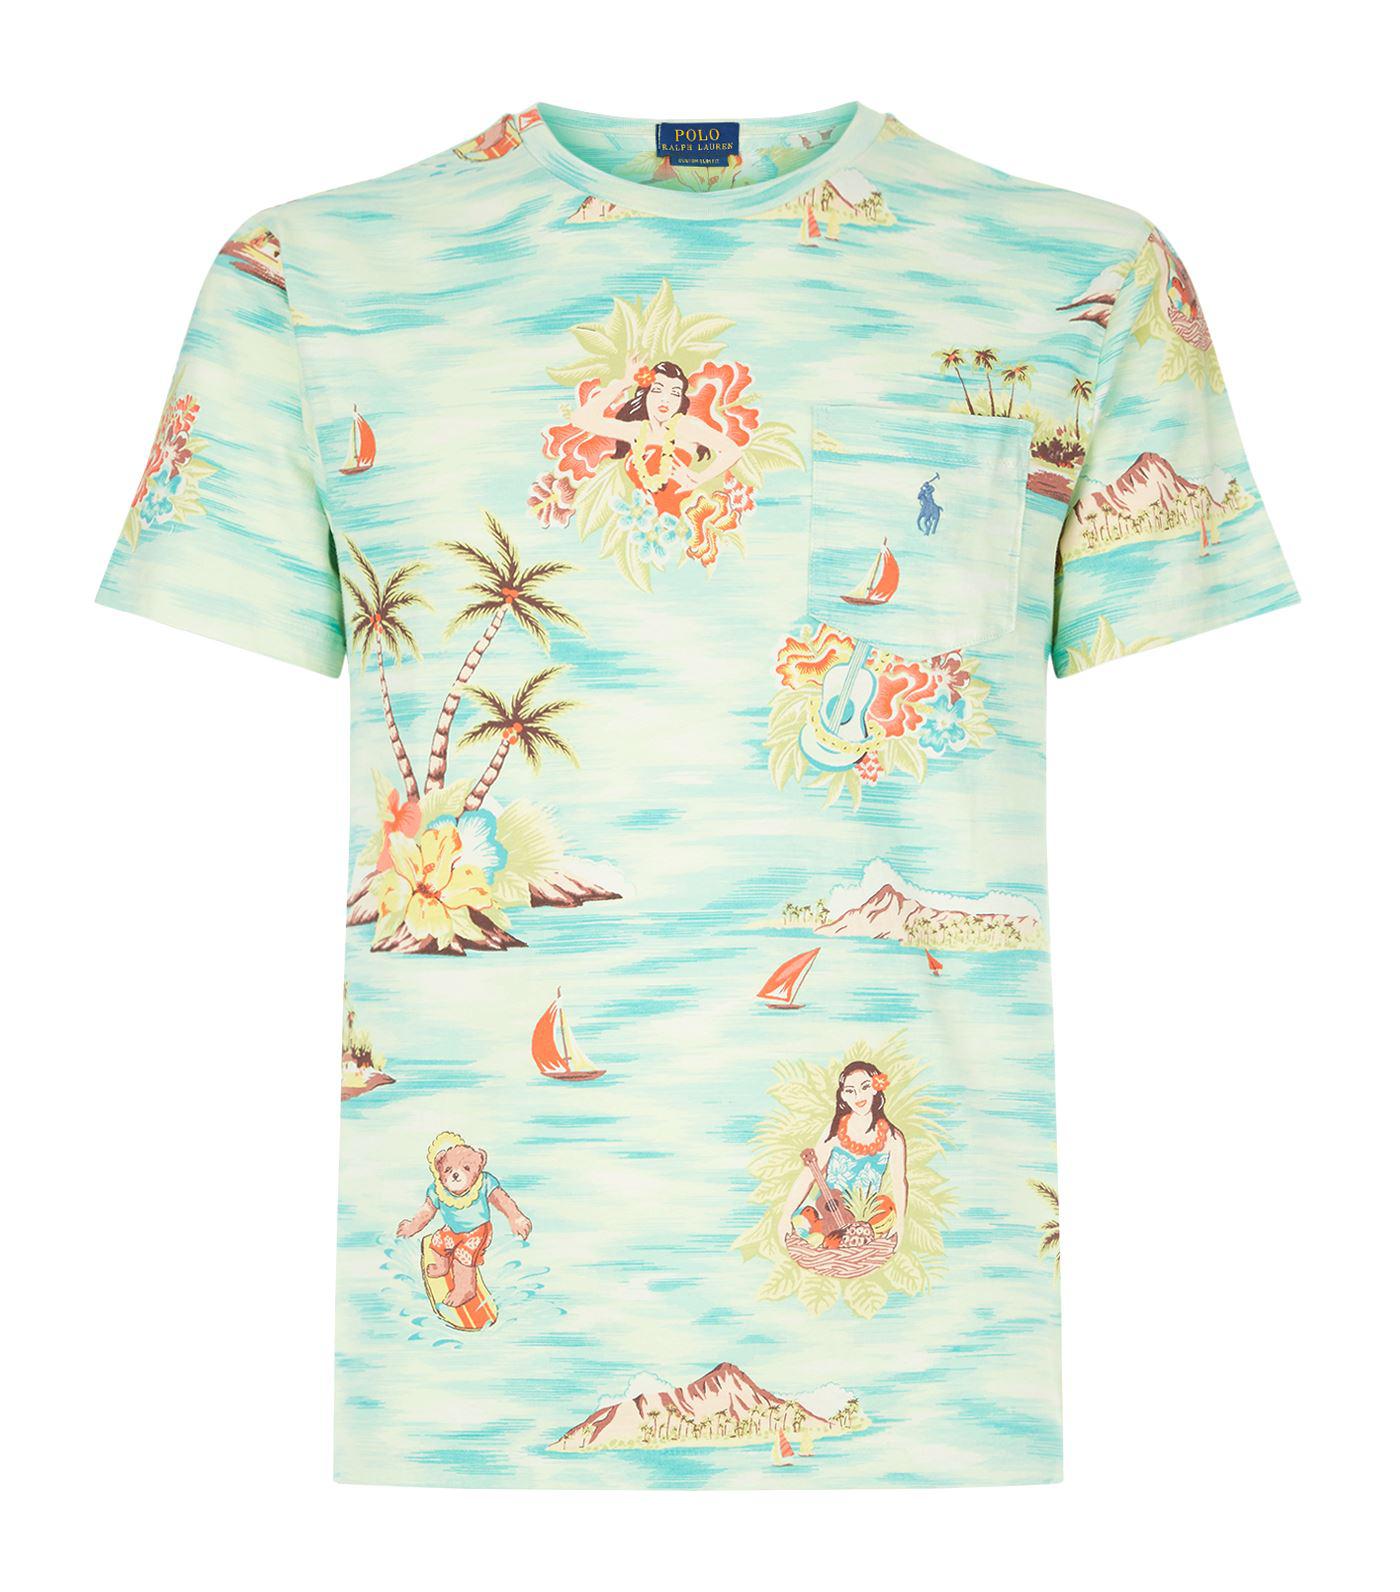 polo ralph lauren hawaiian shirt